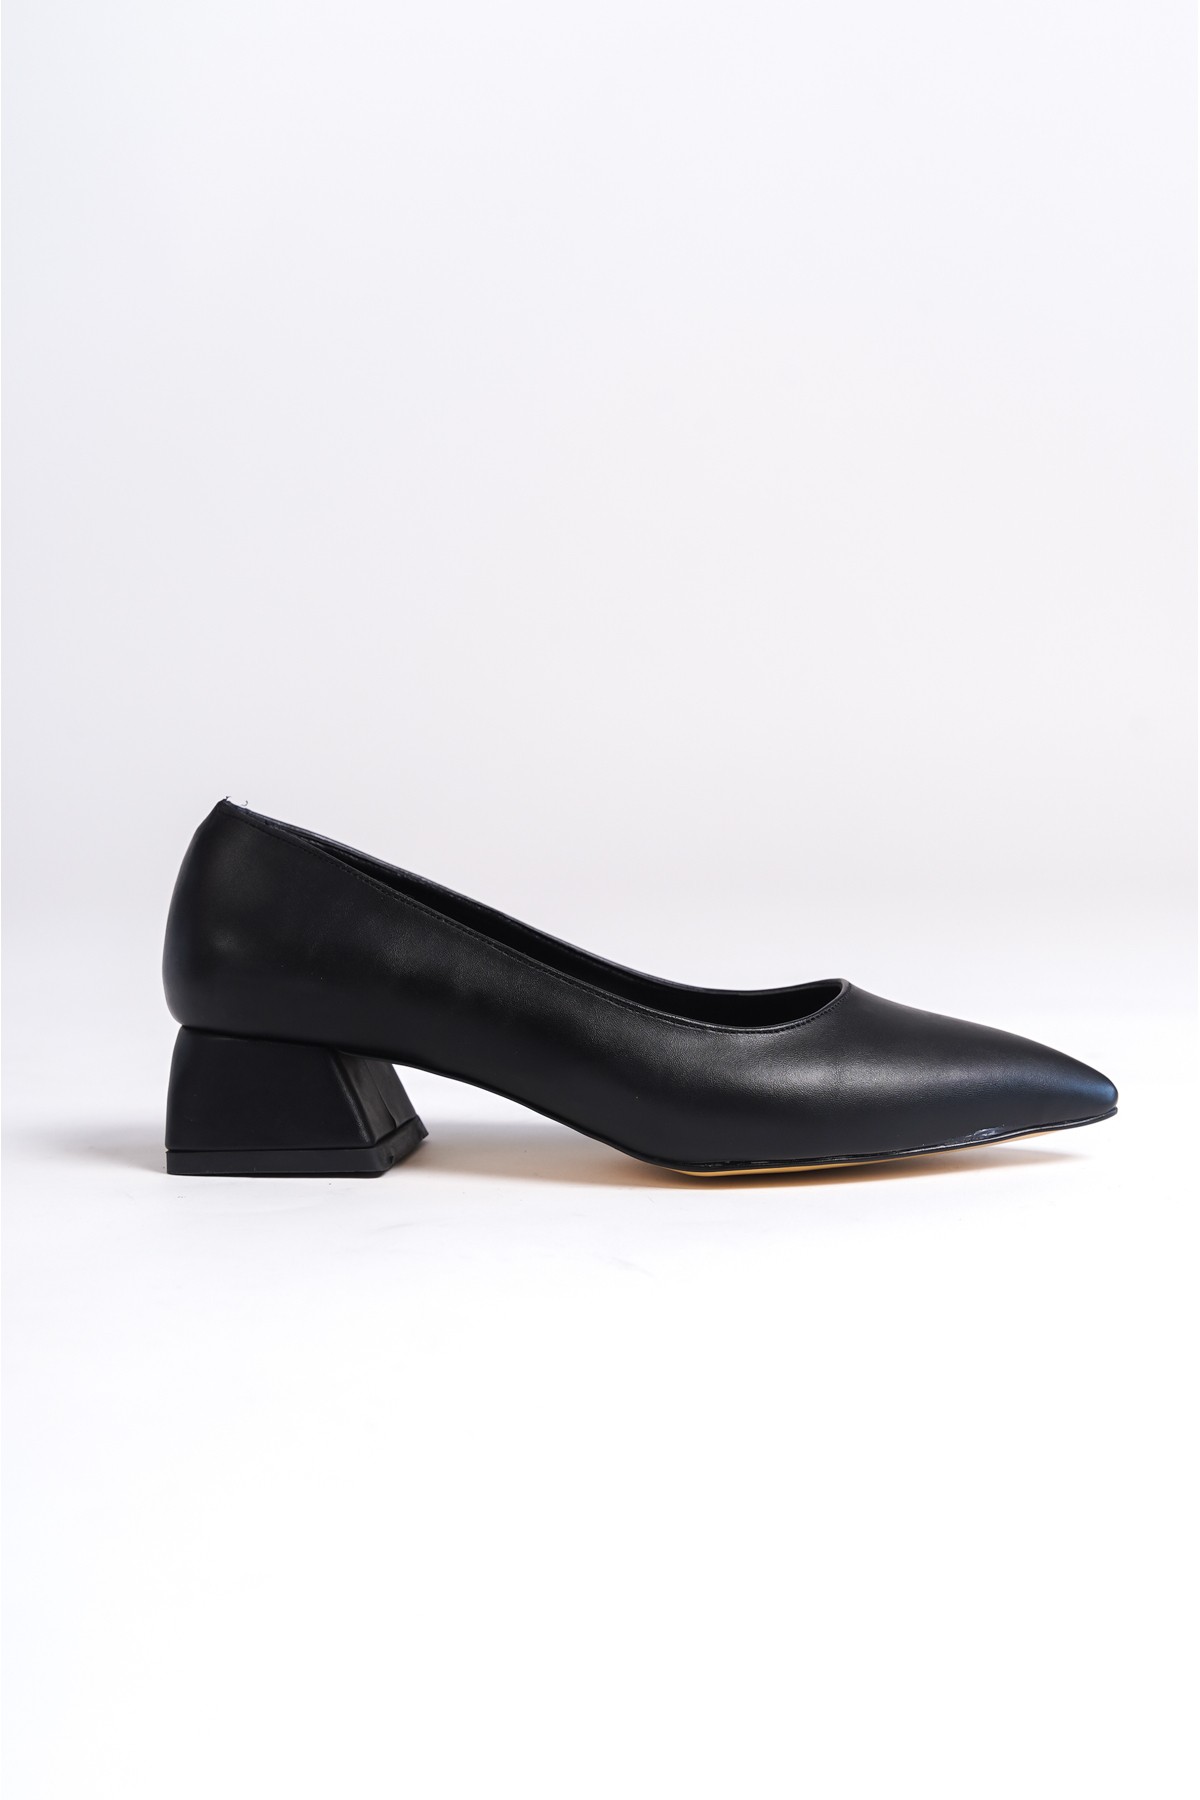 Gijon Kadın Sivri Burunlu Alçak Topuklu Klasik Günlük Babet Görünümlü Topuklu Ayakkabı